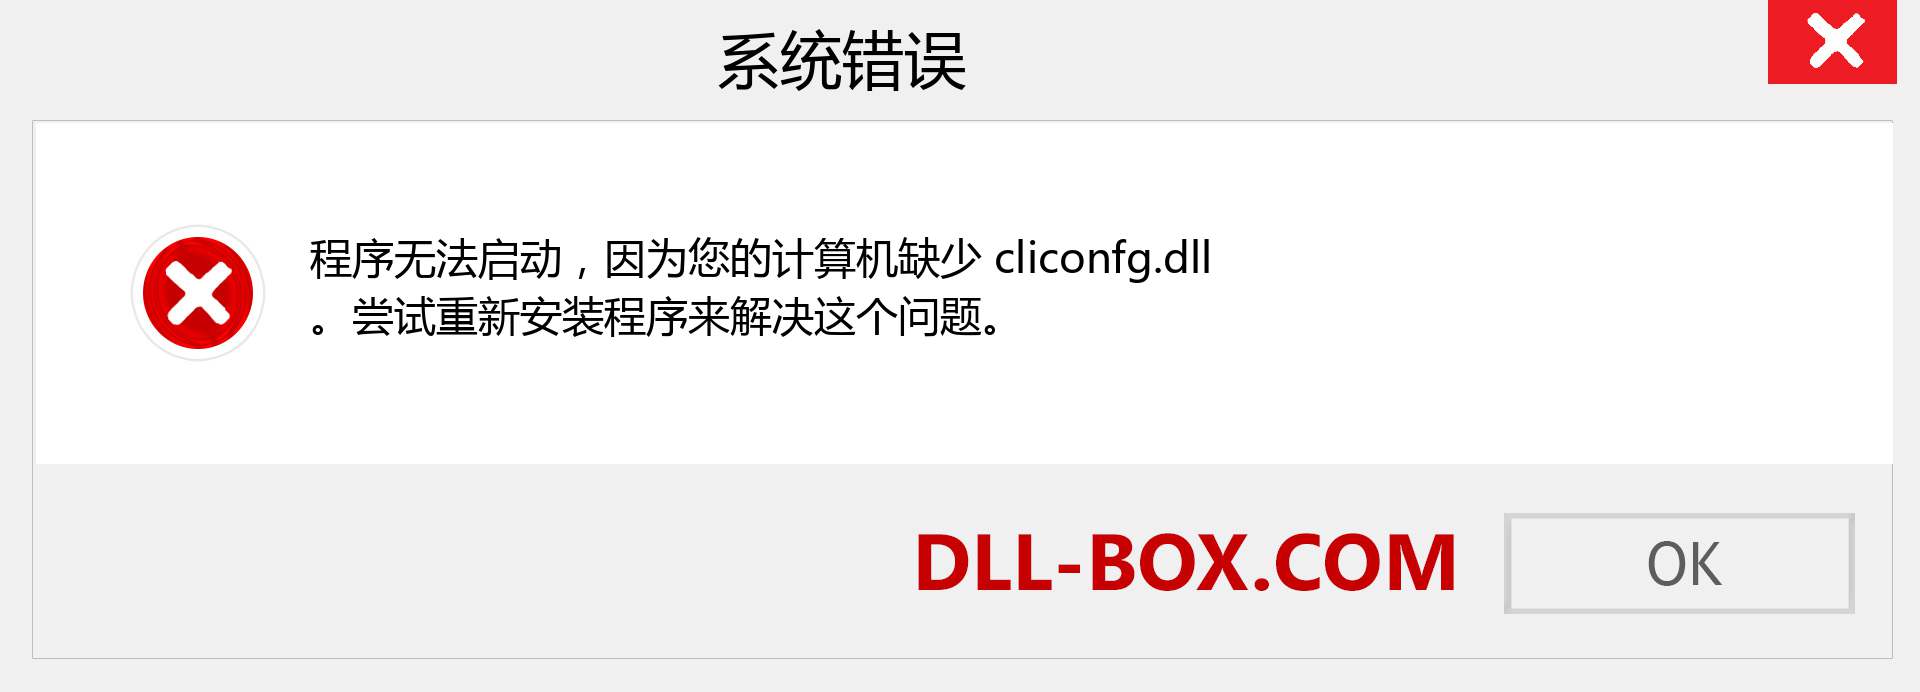 cliconfg.dll 文件丢失？。 适用于 Windows 7、8、10 的下载 - 修复 Windows、照片、图像上的 cliconfg dll 丢失错误